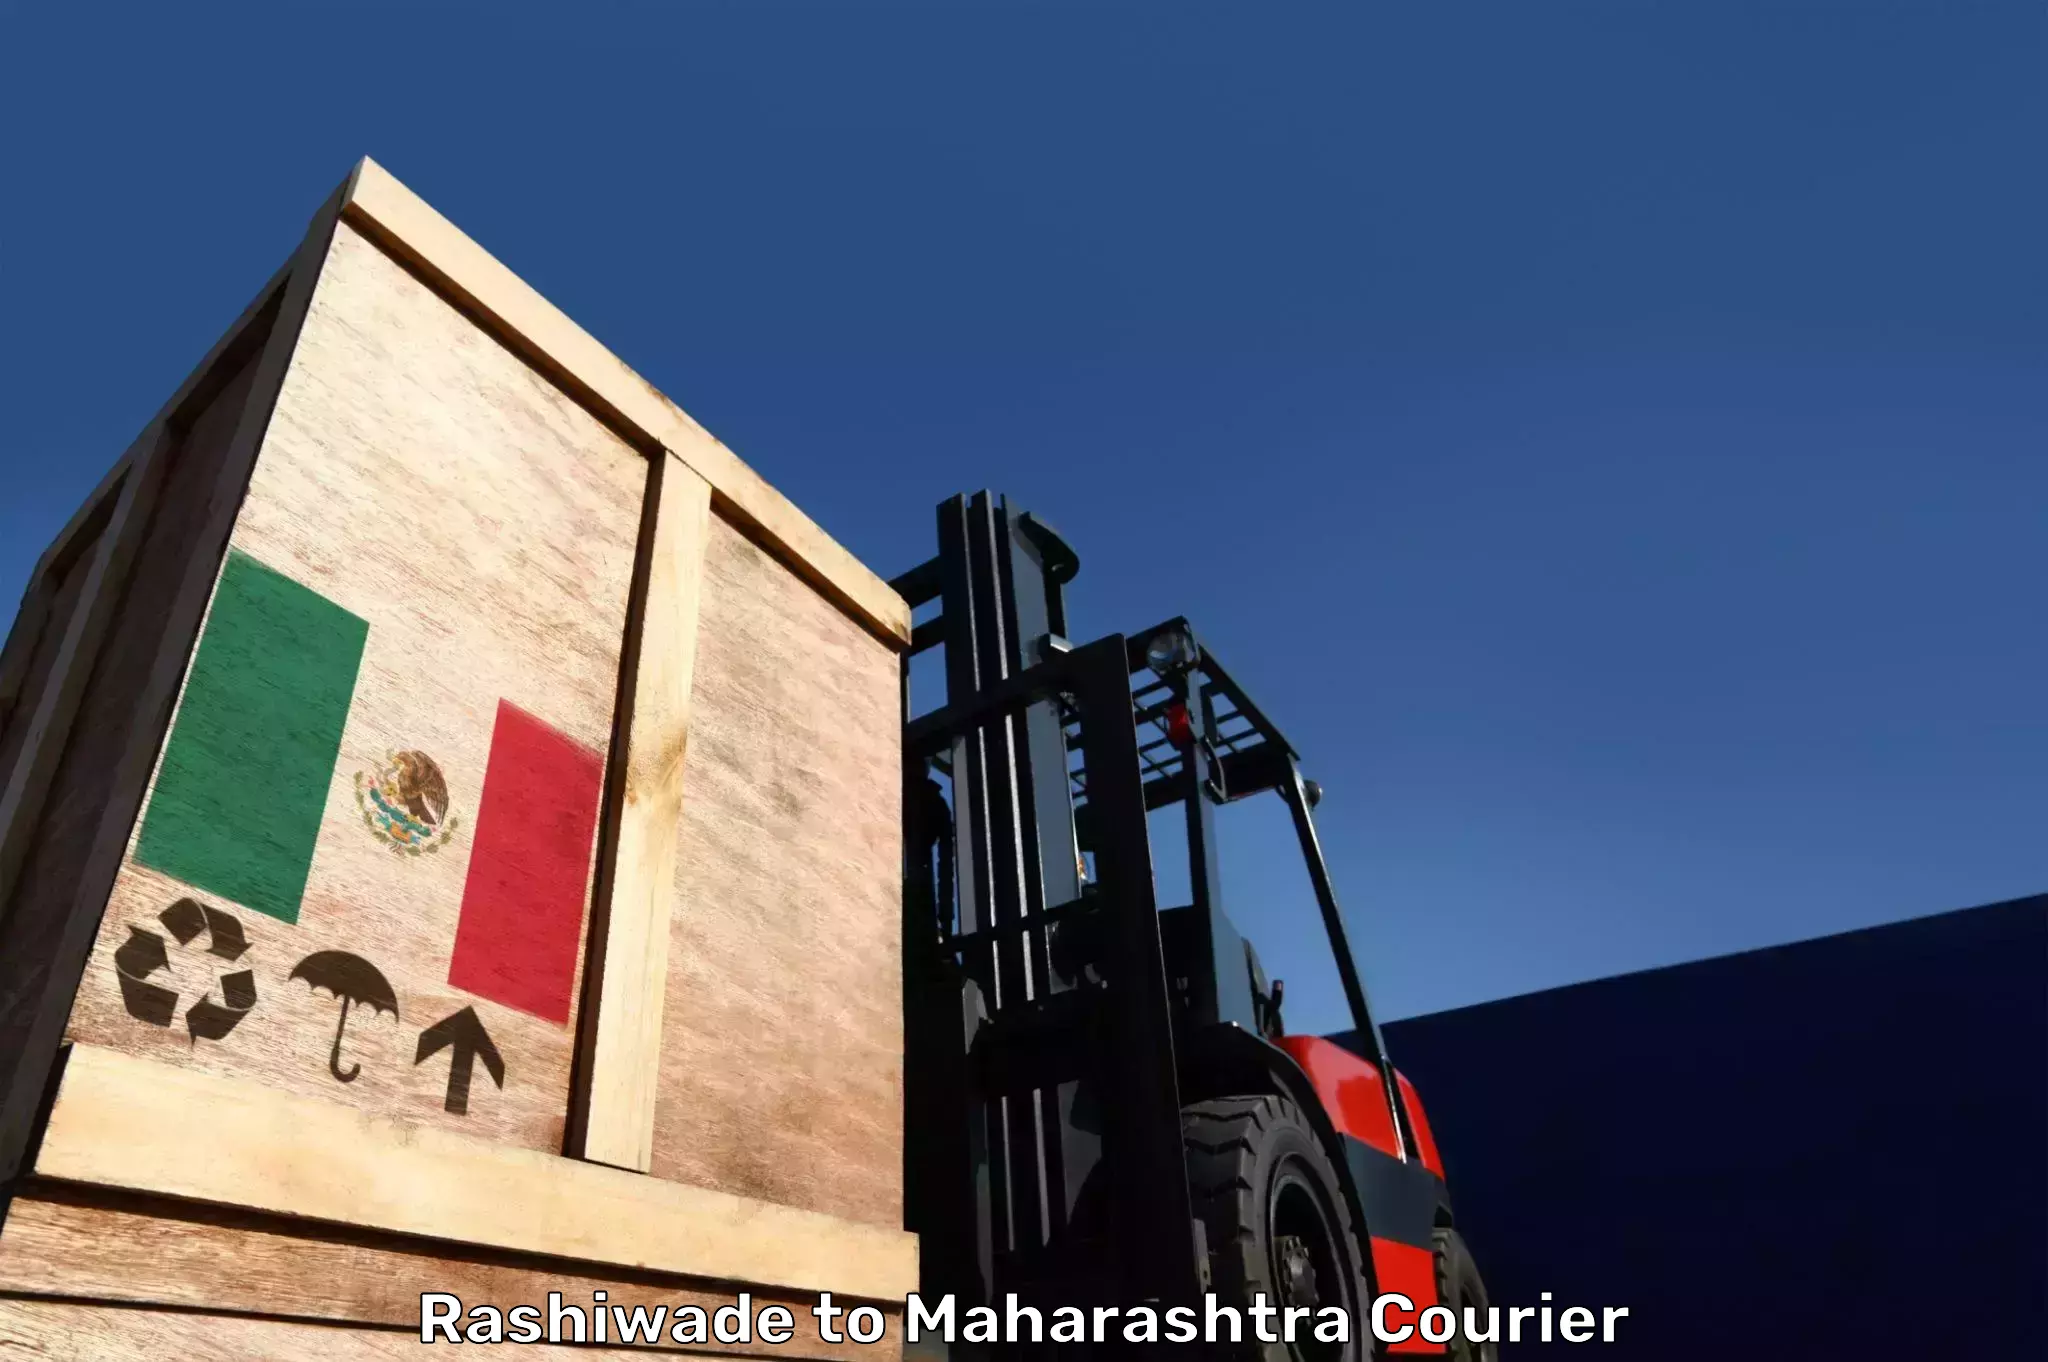 Luggage transport operations Rashiwade to Maharashtra